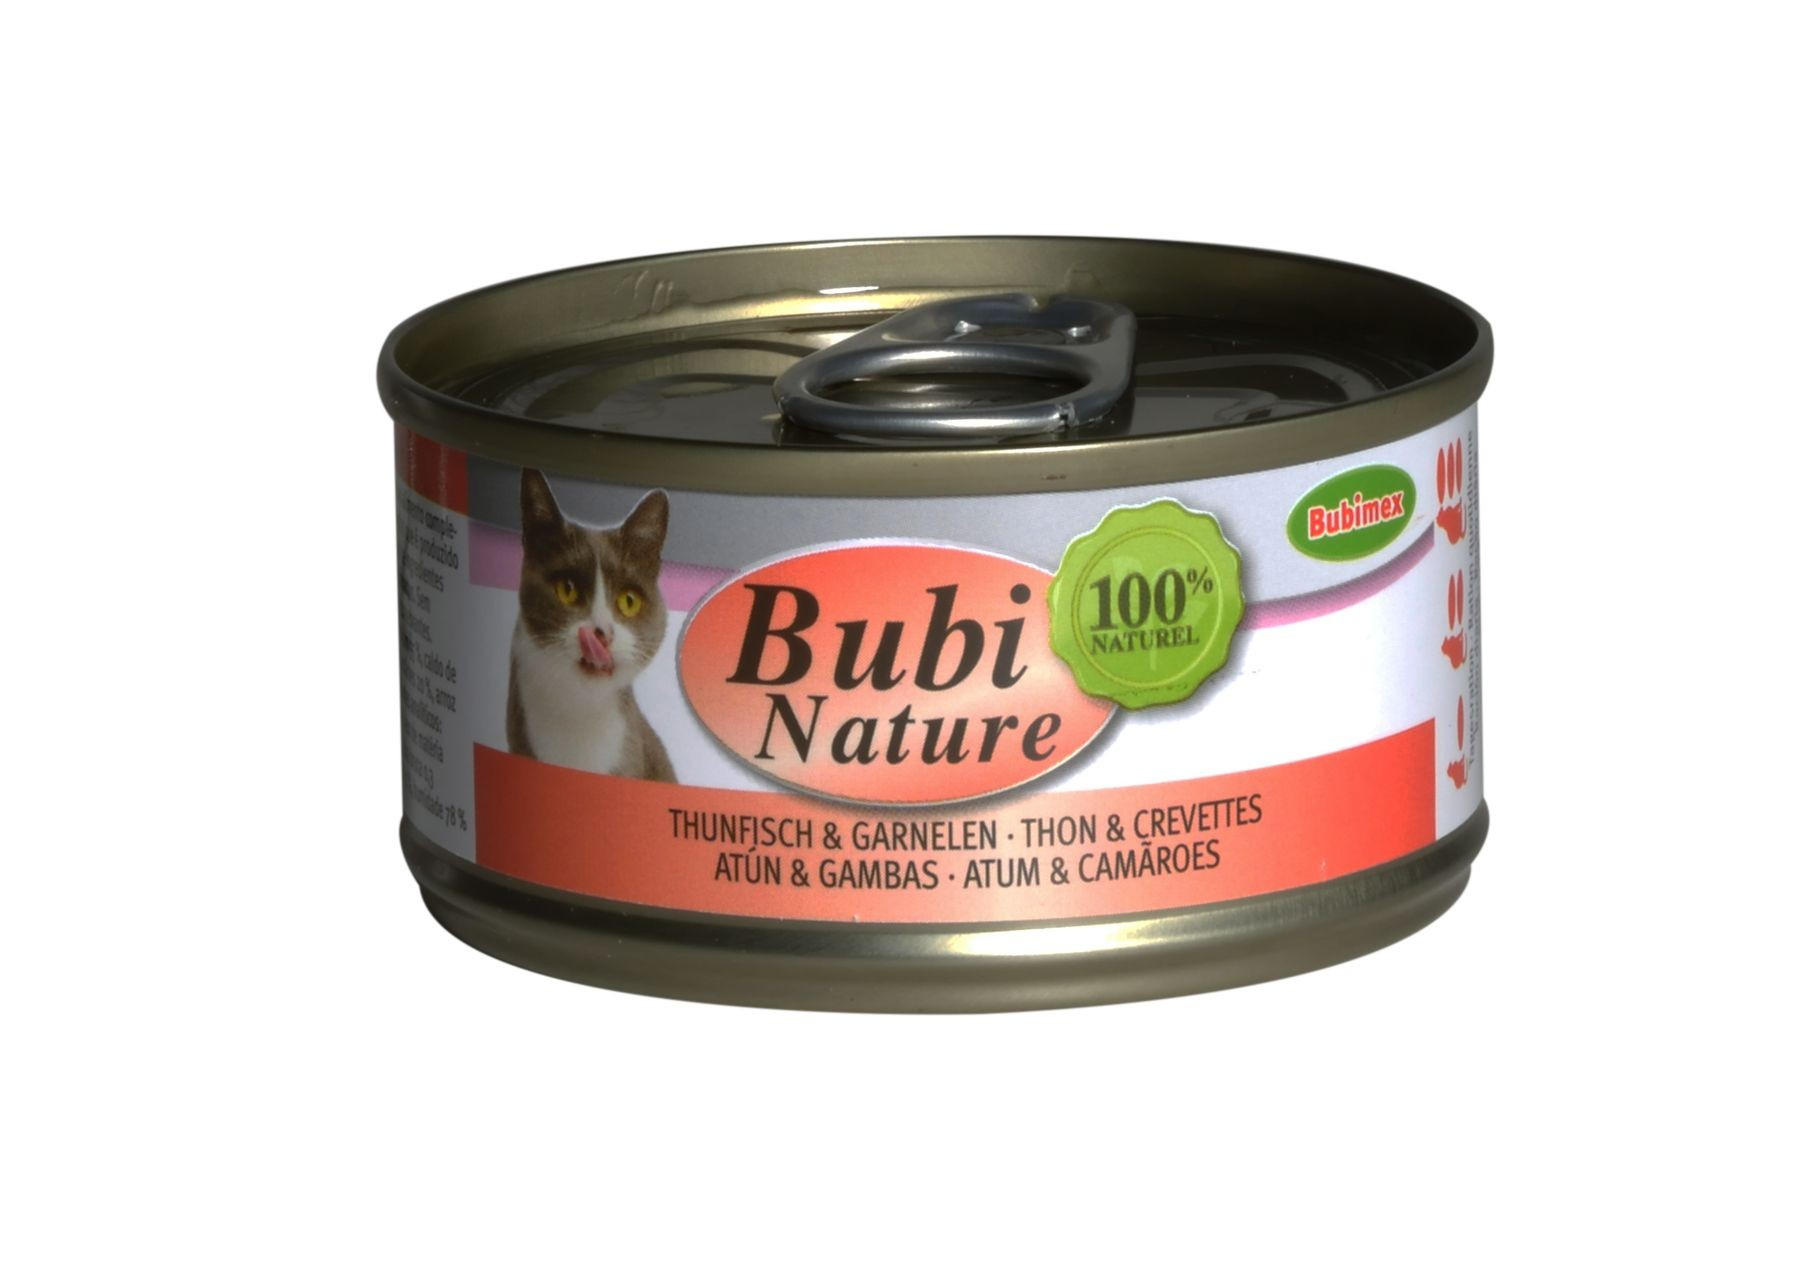 Alimento húmido BUBIMEX Bubi Nature Atum & Camarão para gato